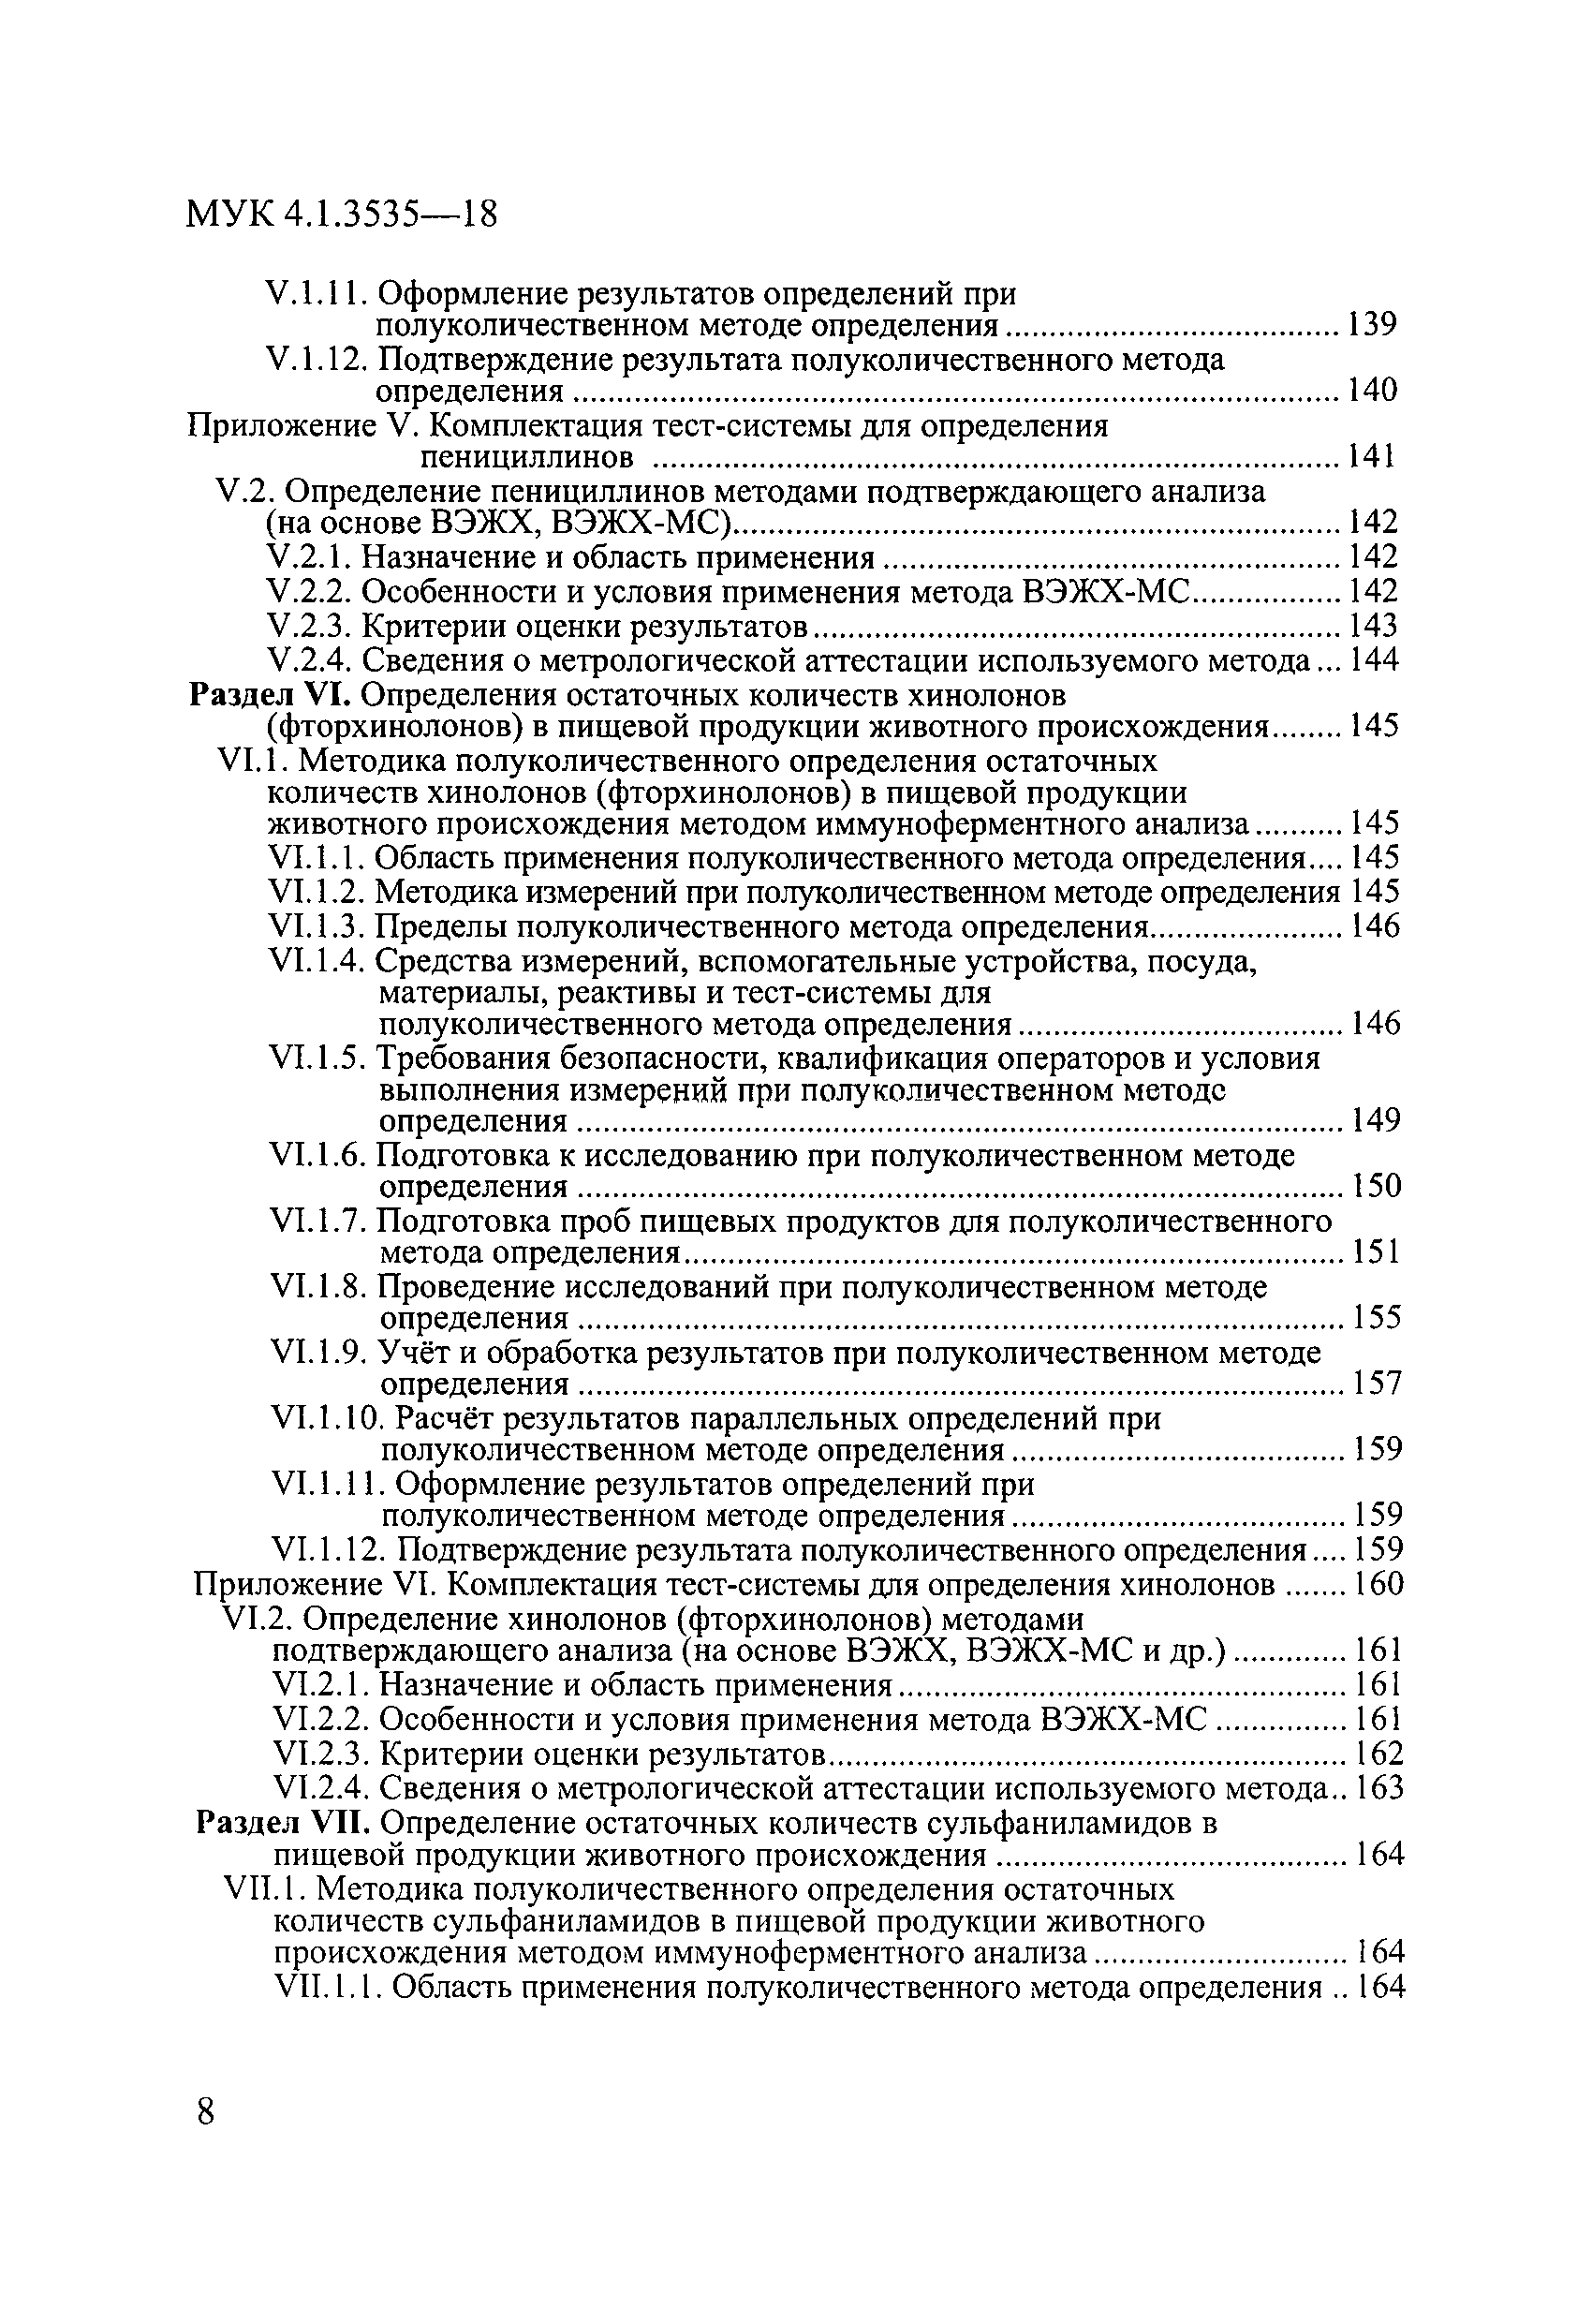 МУК 4.1.3535-18